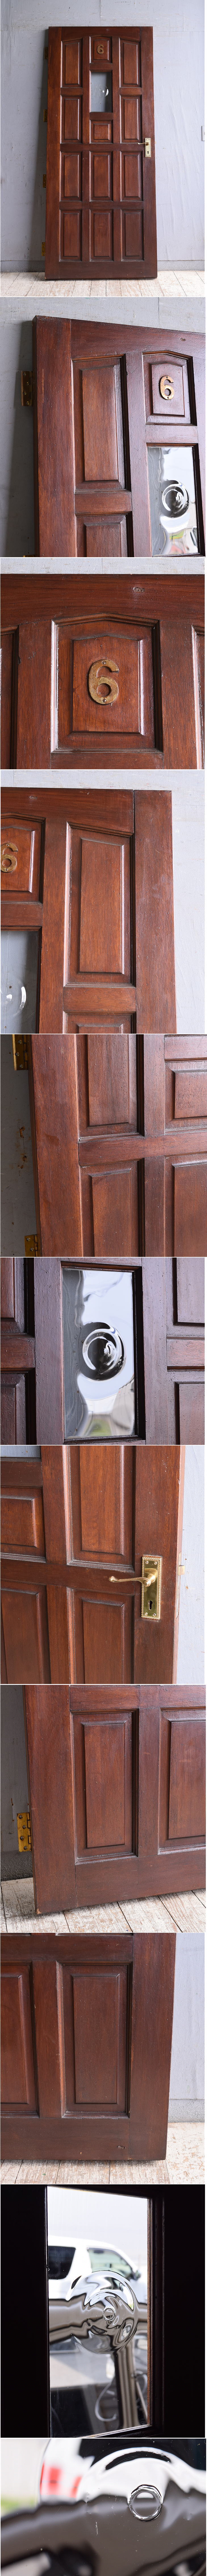 イギリス アンティーク ドア 扉 ディスプレイ 建具 11012